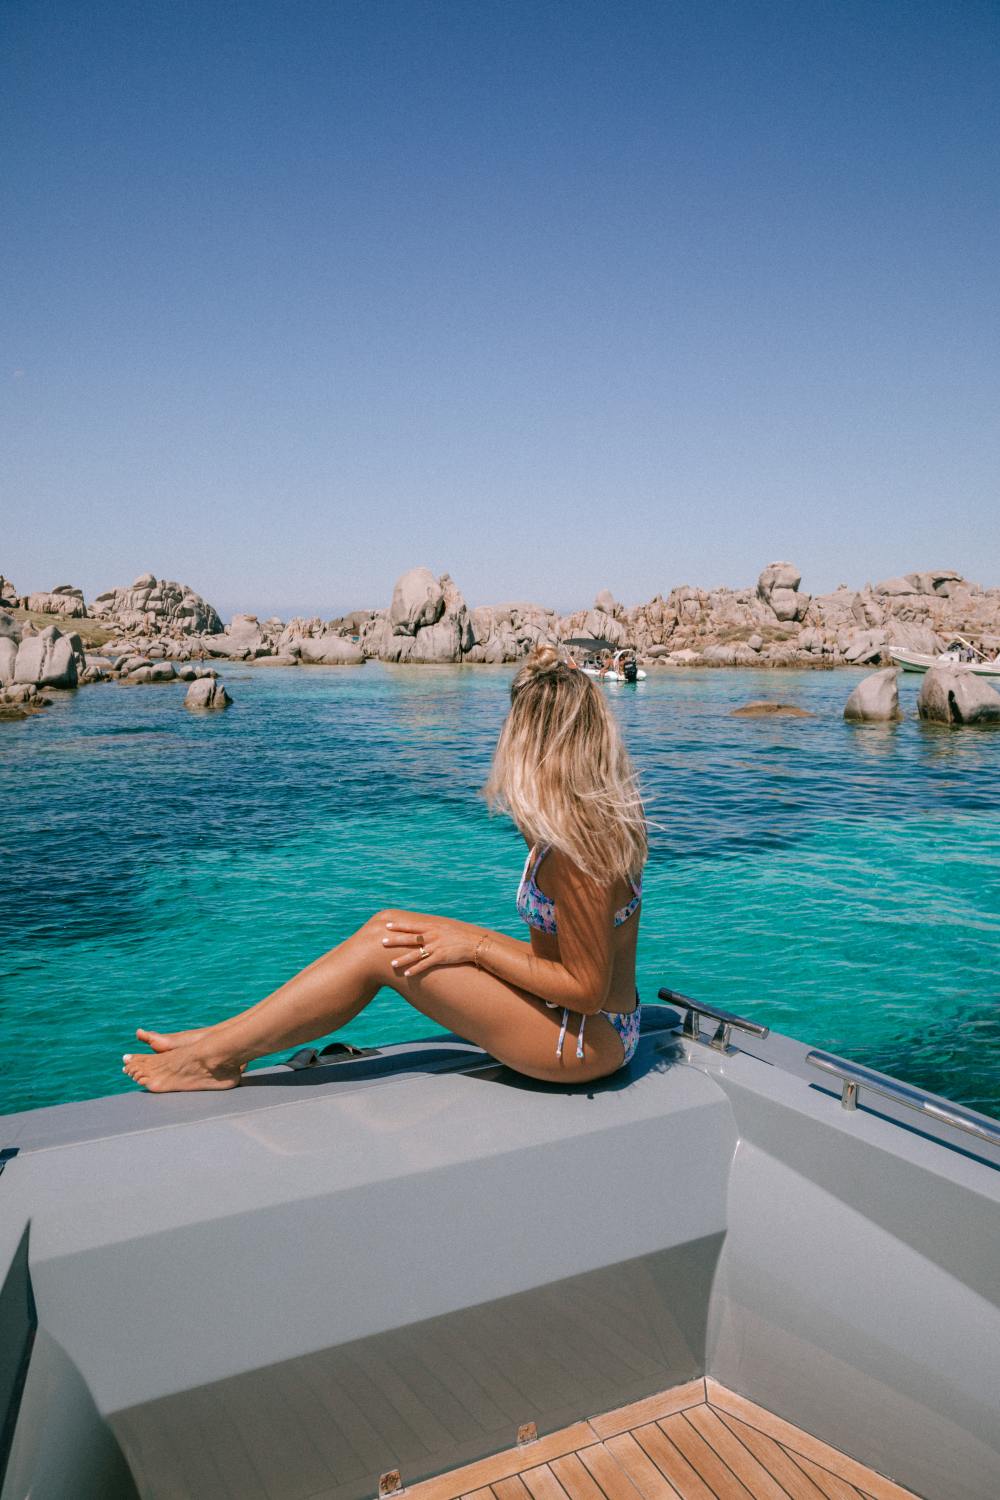 Tour de bateau en Corse du sud - Blondie Baby blog voyages